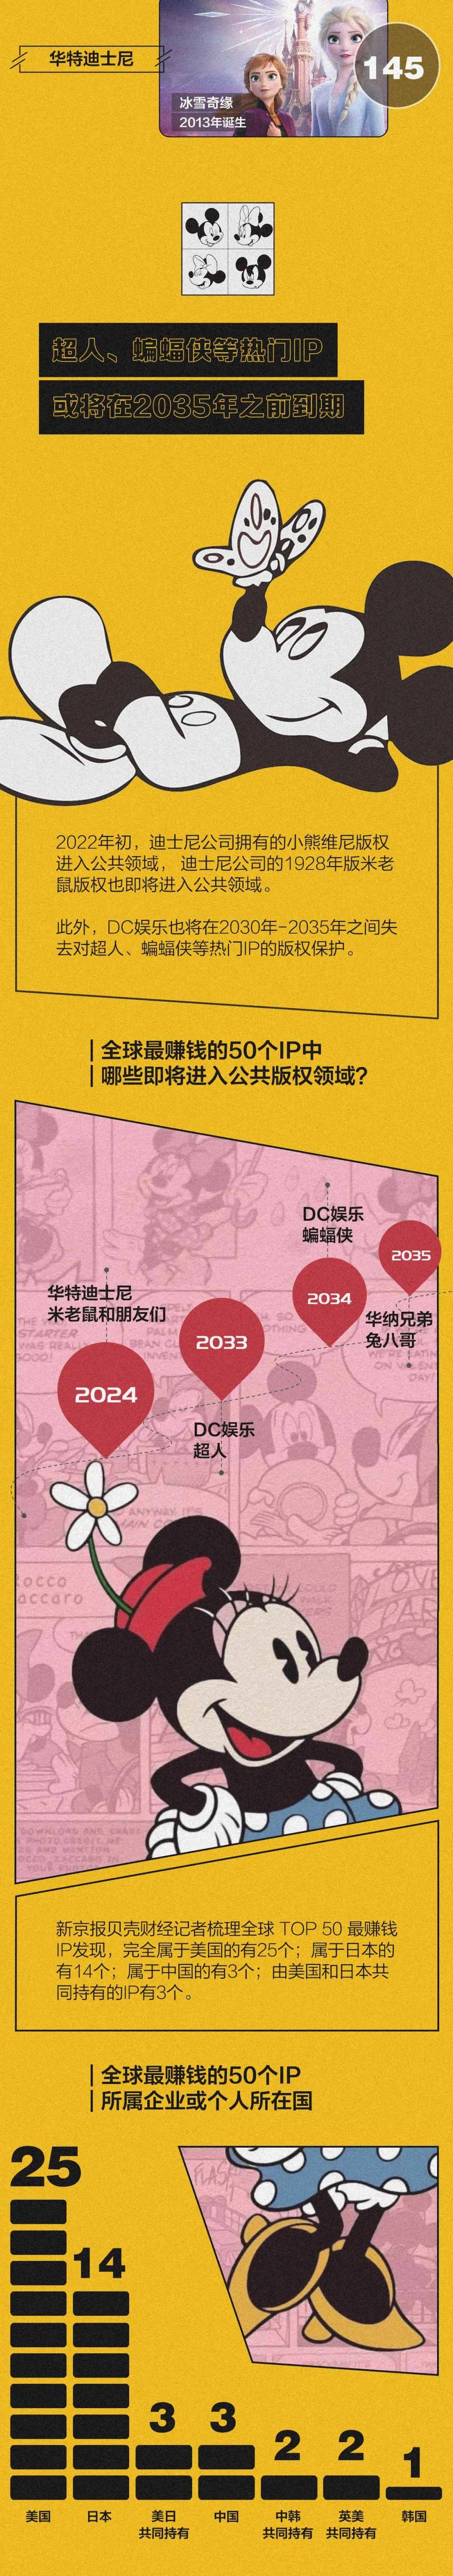 数读|迪士尼CEO称可能继续涨价 米老鼠为迪士尼赚了多少钱？